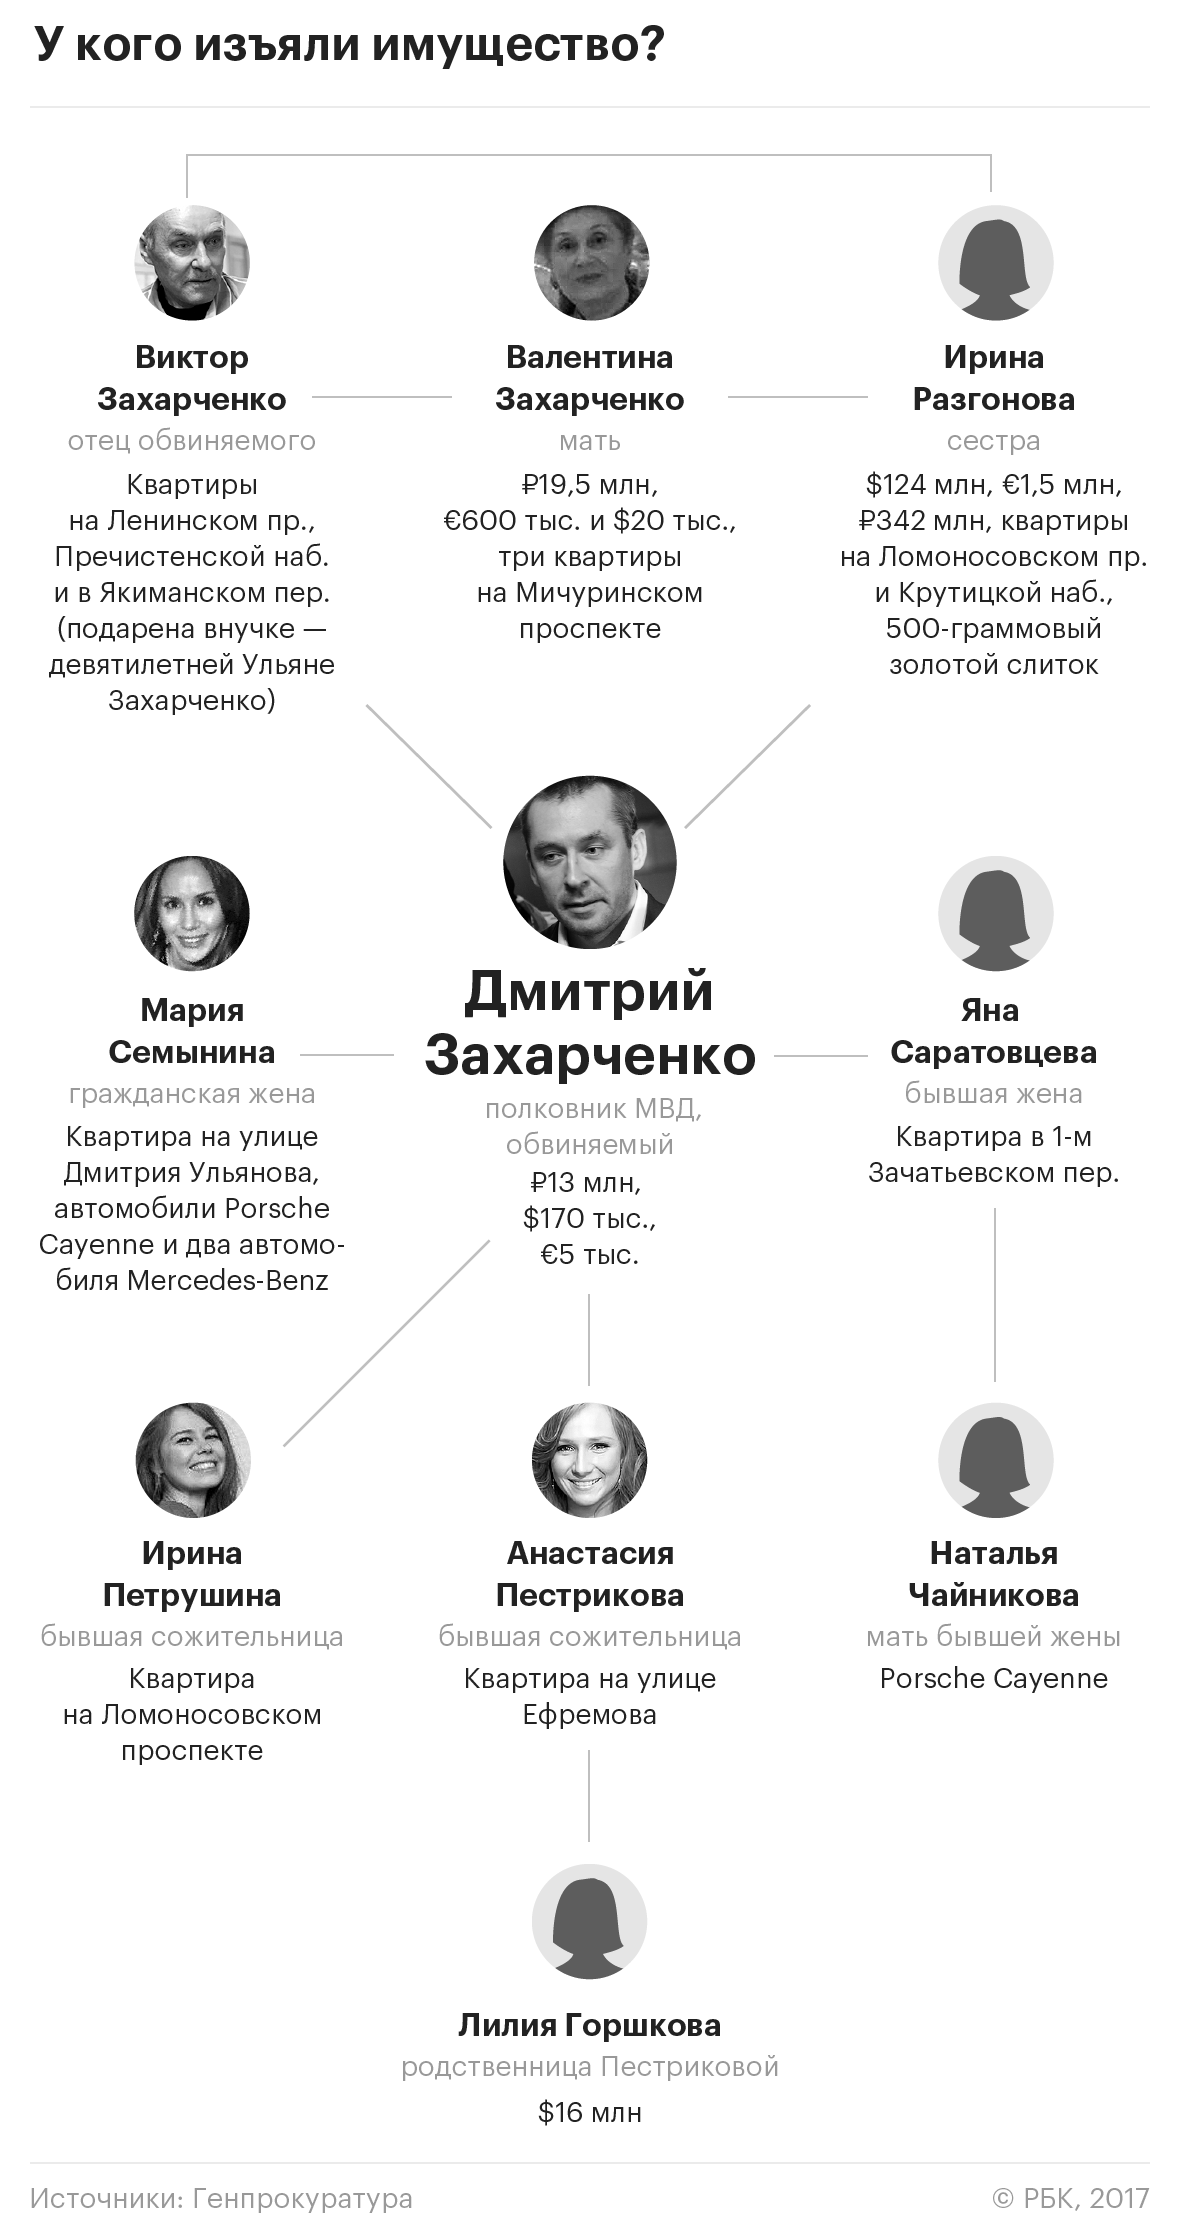 Как от «дел Захарченко» пополняется российский бюджет